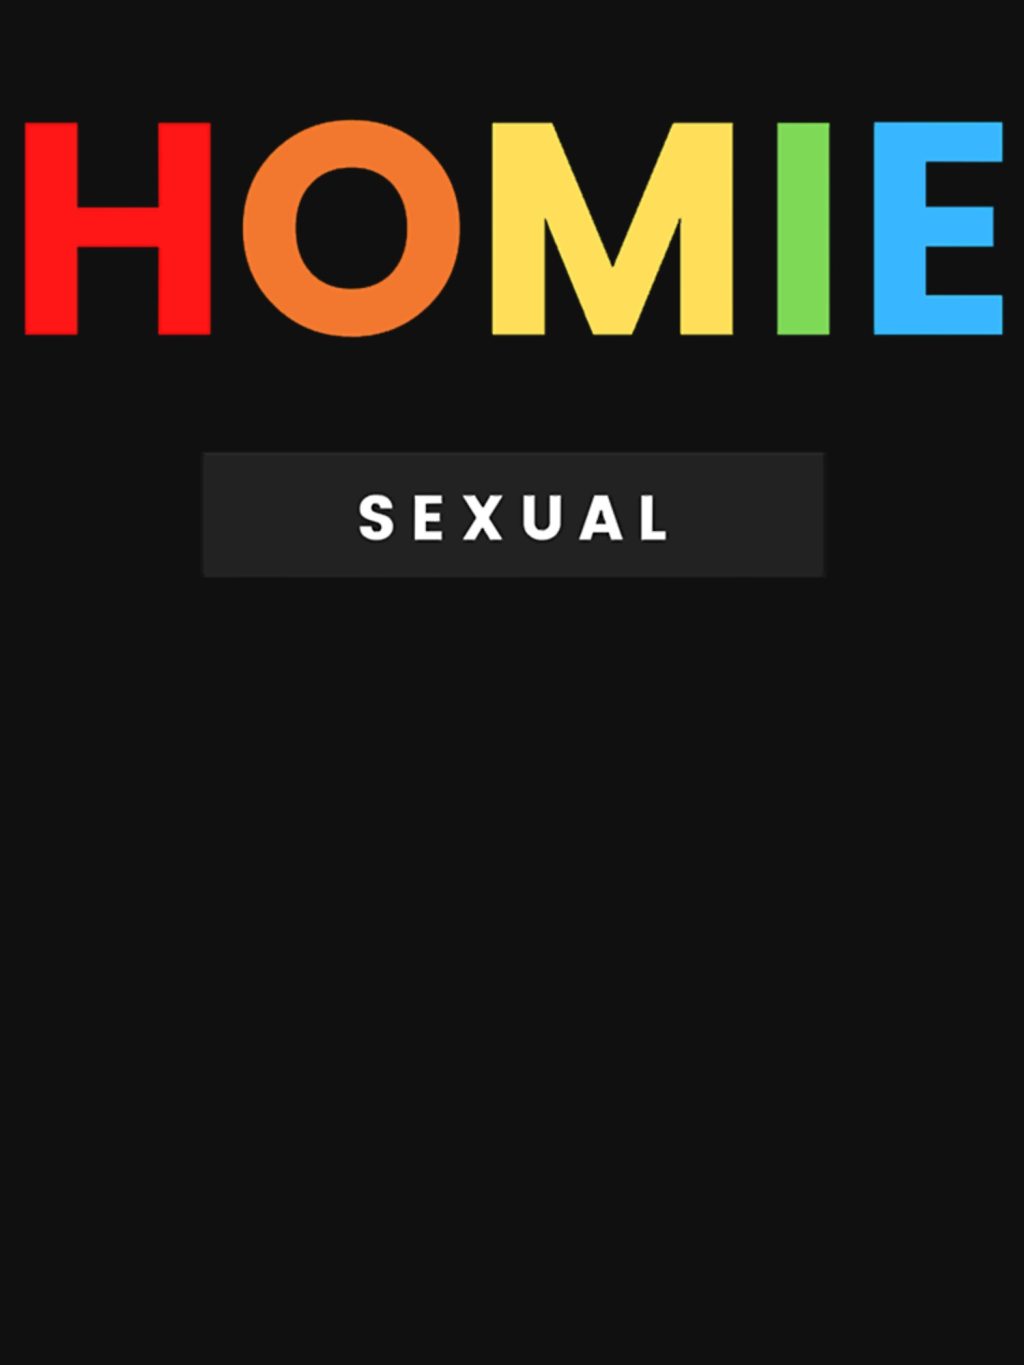 Homiesexual Hoodie Official Haikyuu Merch